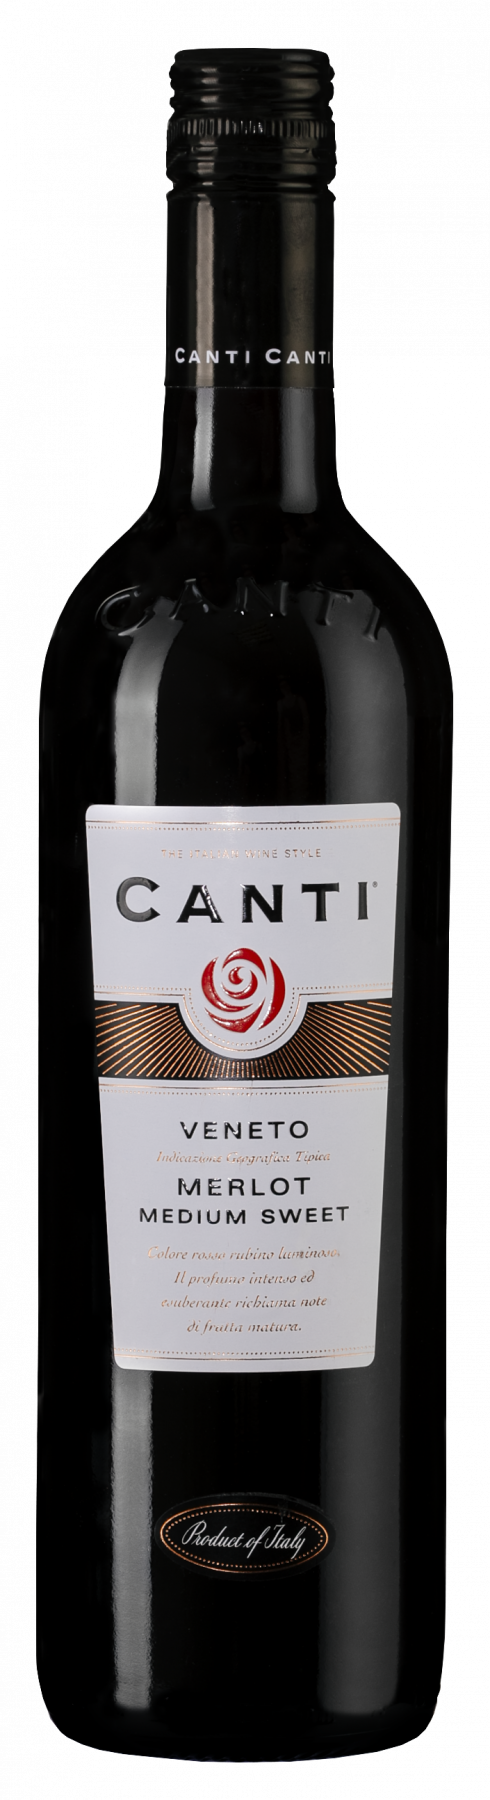 Вино канти. Canti Veneto Merlot Medium Sweet. Canti вино красное полусладкое. Итальянское вино Мерло Венето. Красное вино Merlot Veneto Италия.